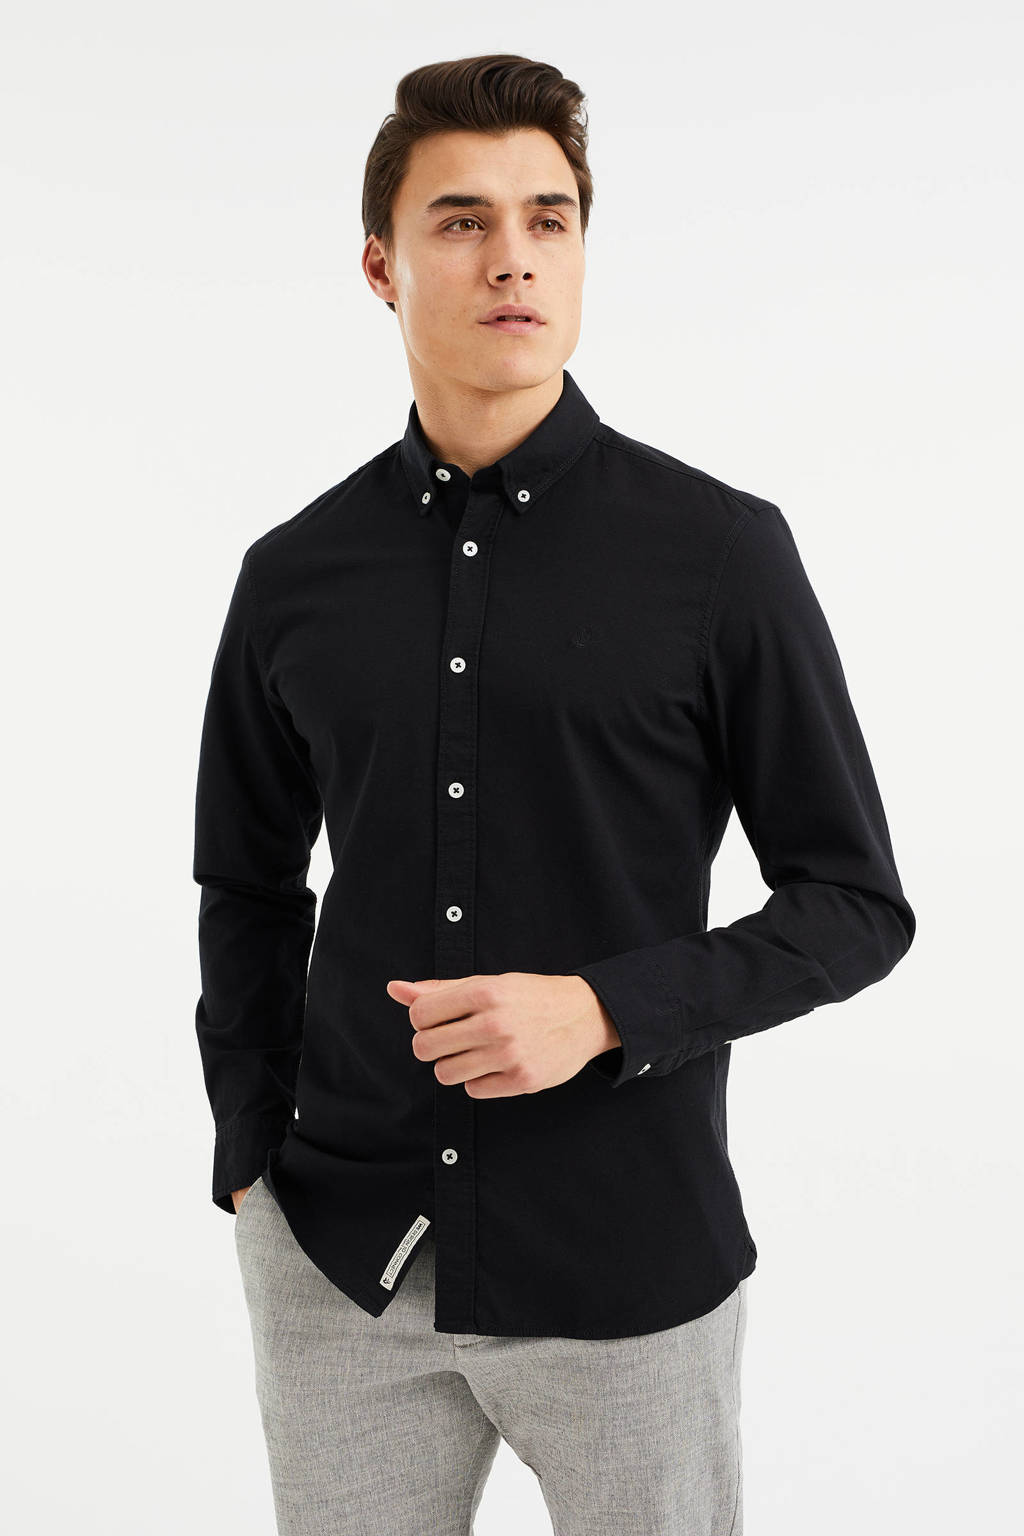 landinwaarts moed weggooien WE Fashion Fundamentals slim fit overhemd met logo zwart | wehkamp